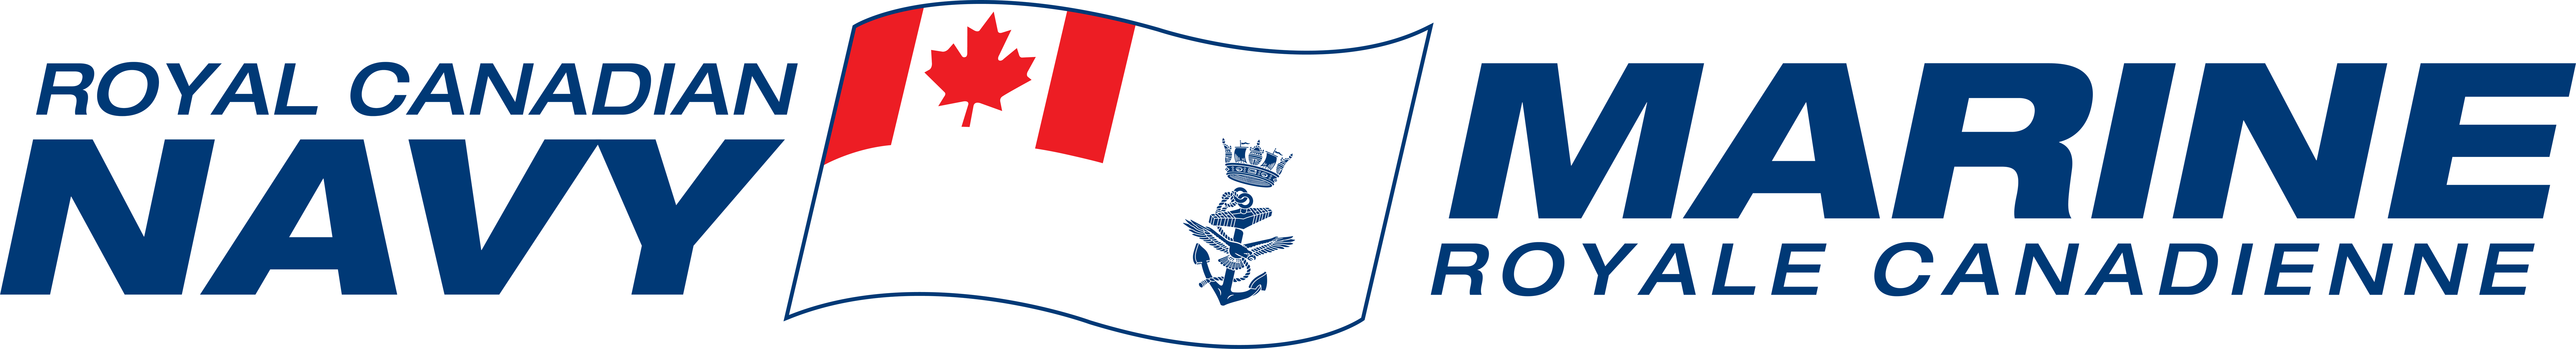 Royal Canadian Navy emblem